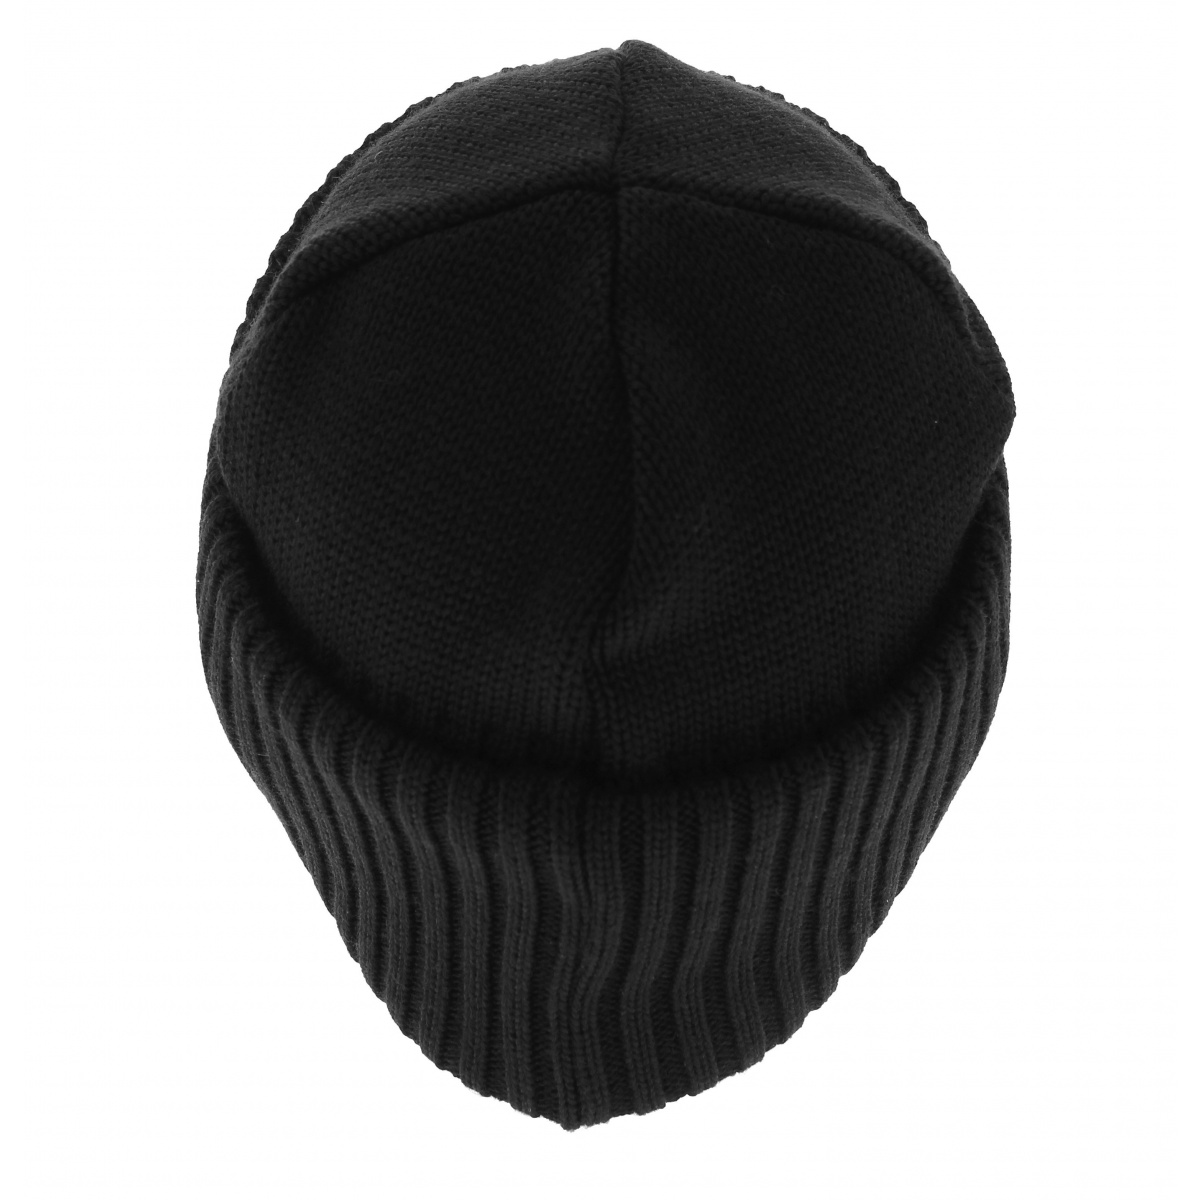 Steve black sailor hat - Traclet - Traclet shop Reference : 6374 ...